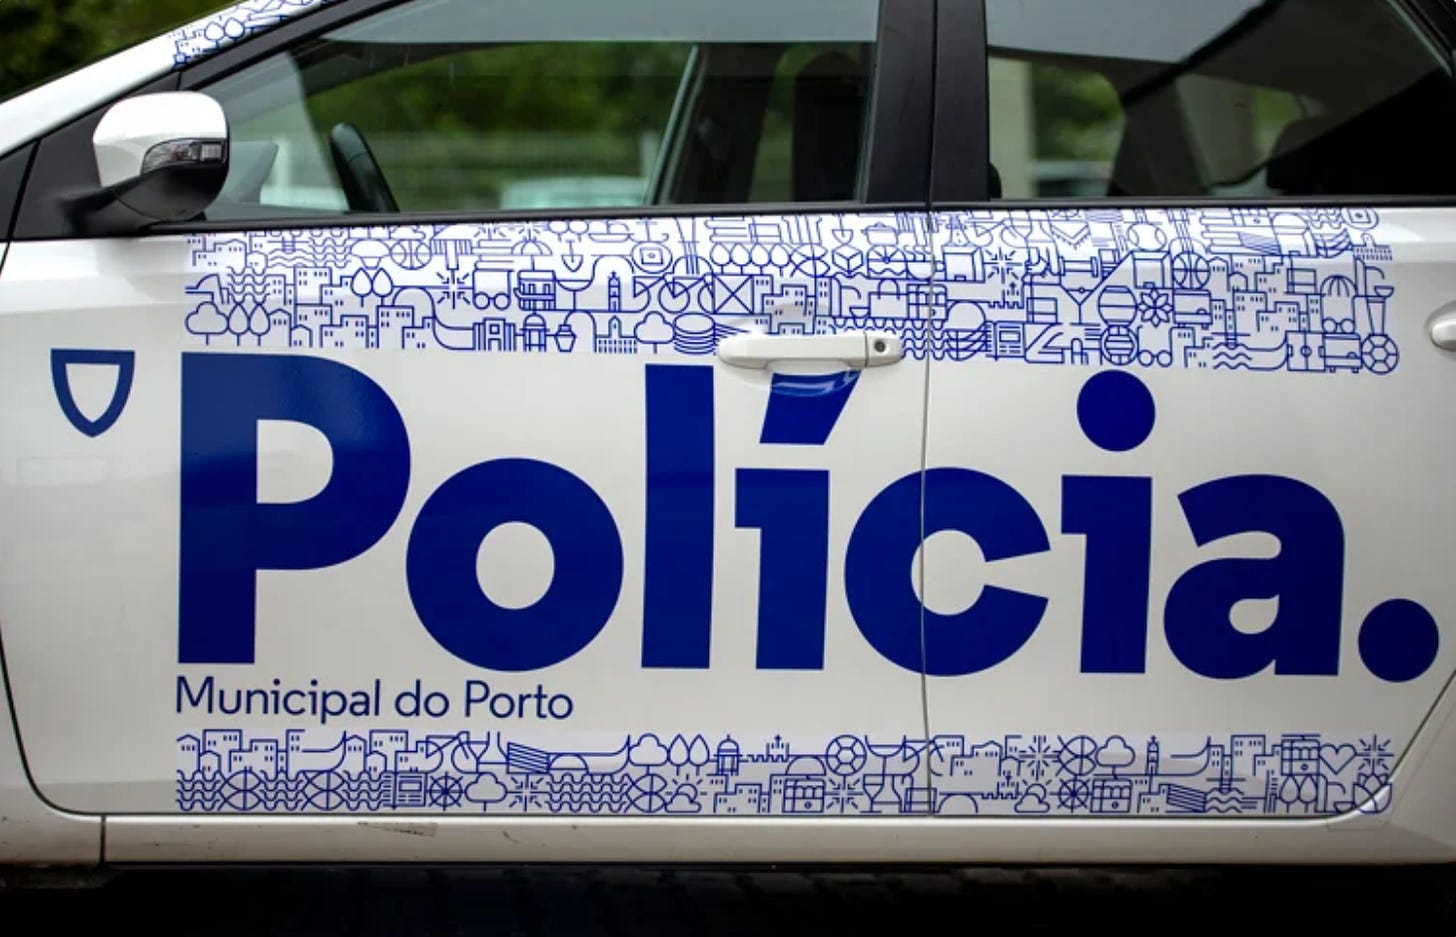 La portiera di un'auto della polizia municipale di Porto: il logo è dello stesso azzurro e dice Polícia. sempre con il punto finale.